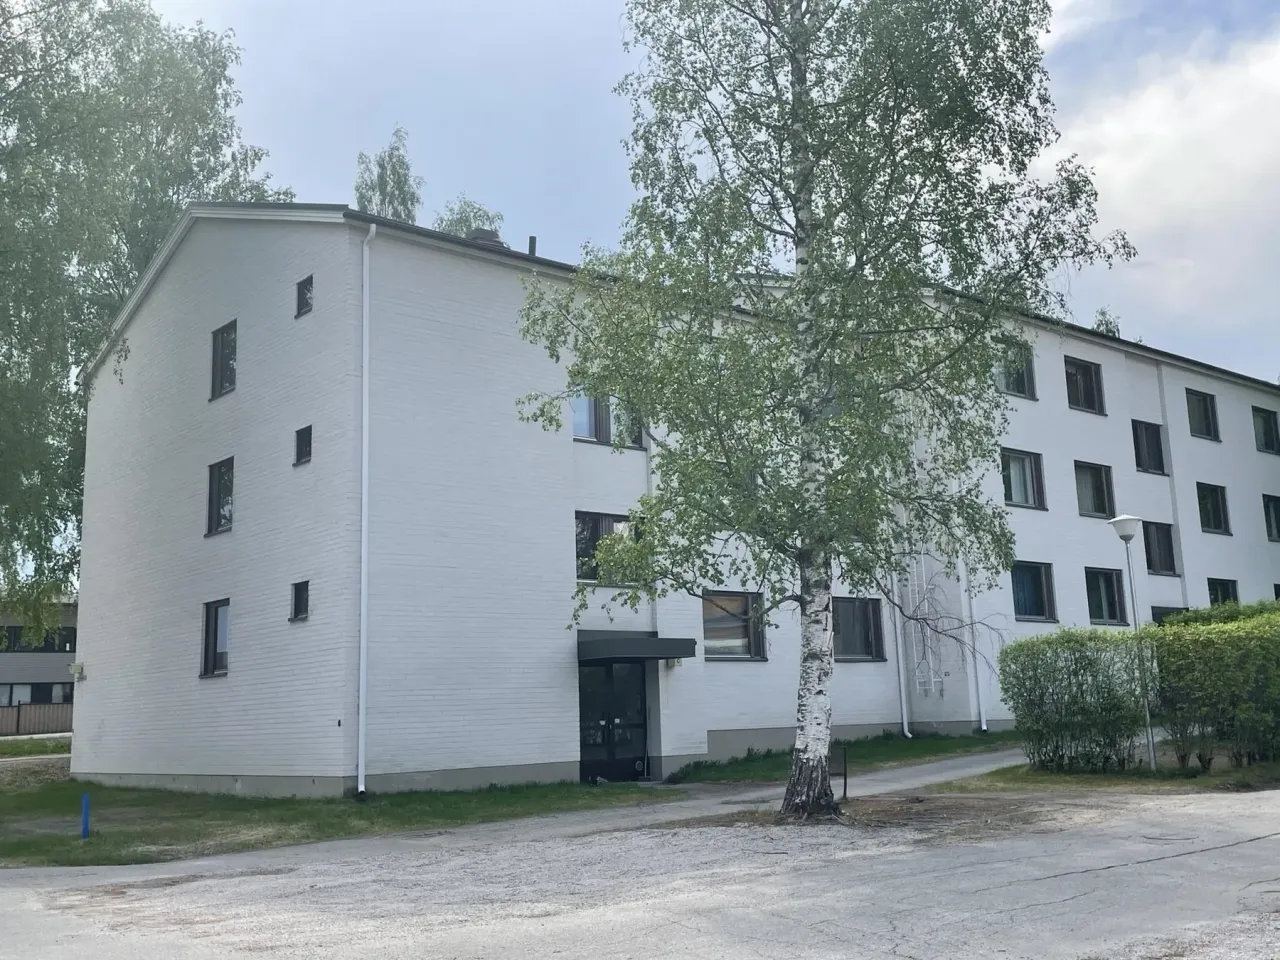 Flat in Joensuu, Finland, 43 sq.m - picture 1